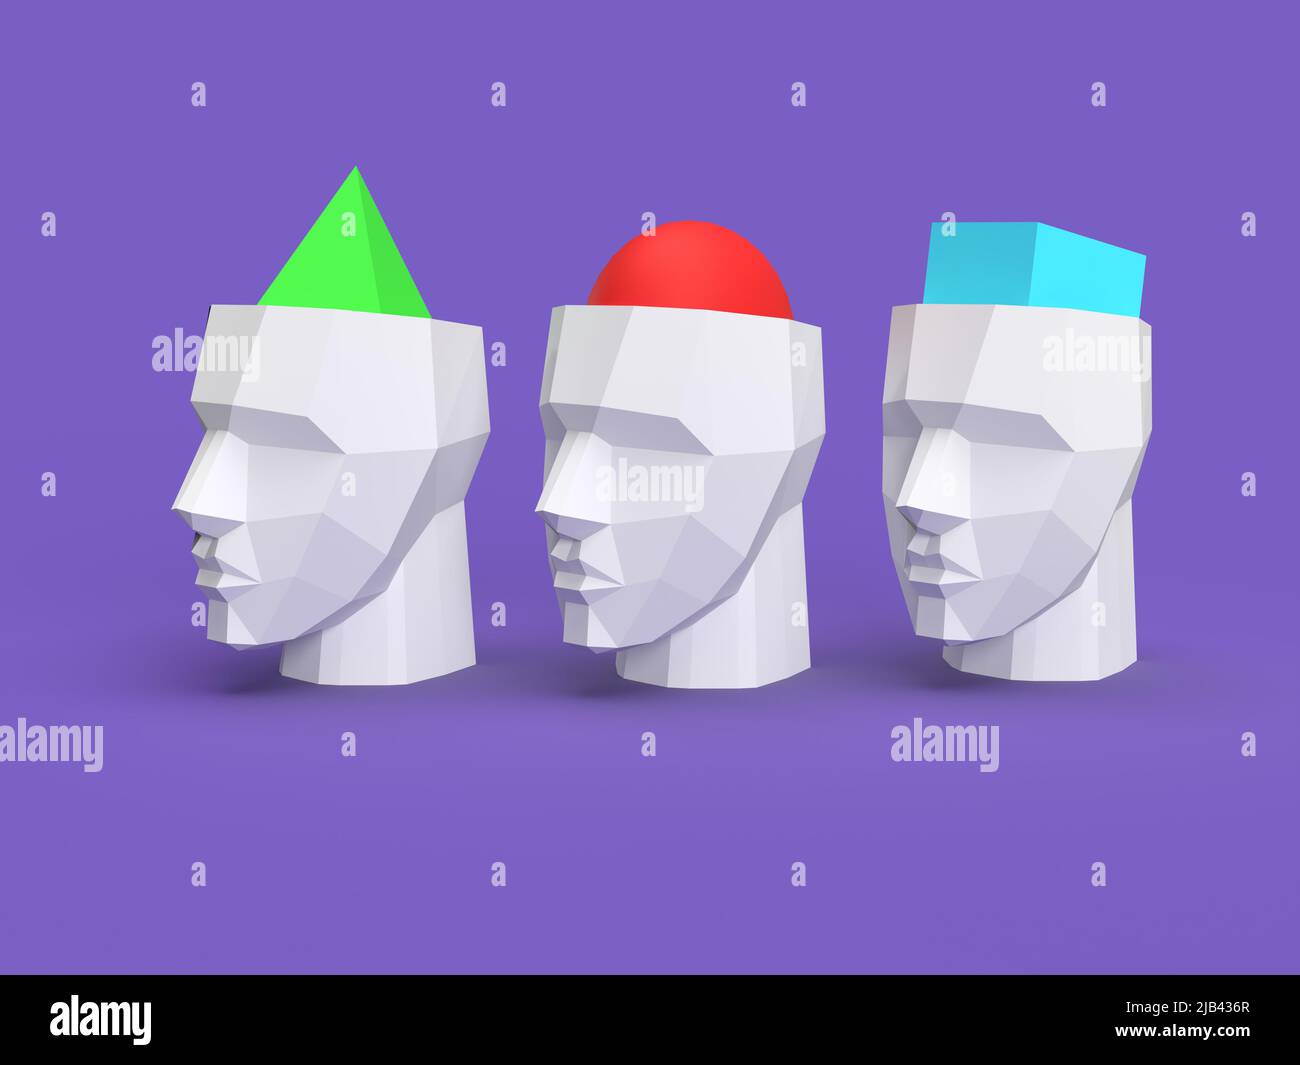 Meinungsvielfalt: Menschen mit unterschiedlichen Überzeugungen 3D Illustrationsköpfe gefüllt mit unterschiedlichen geometrischen Figuren Stockfoto